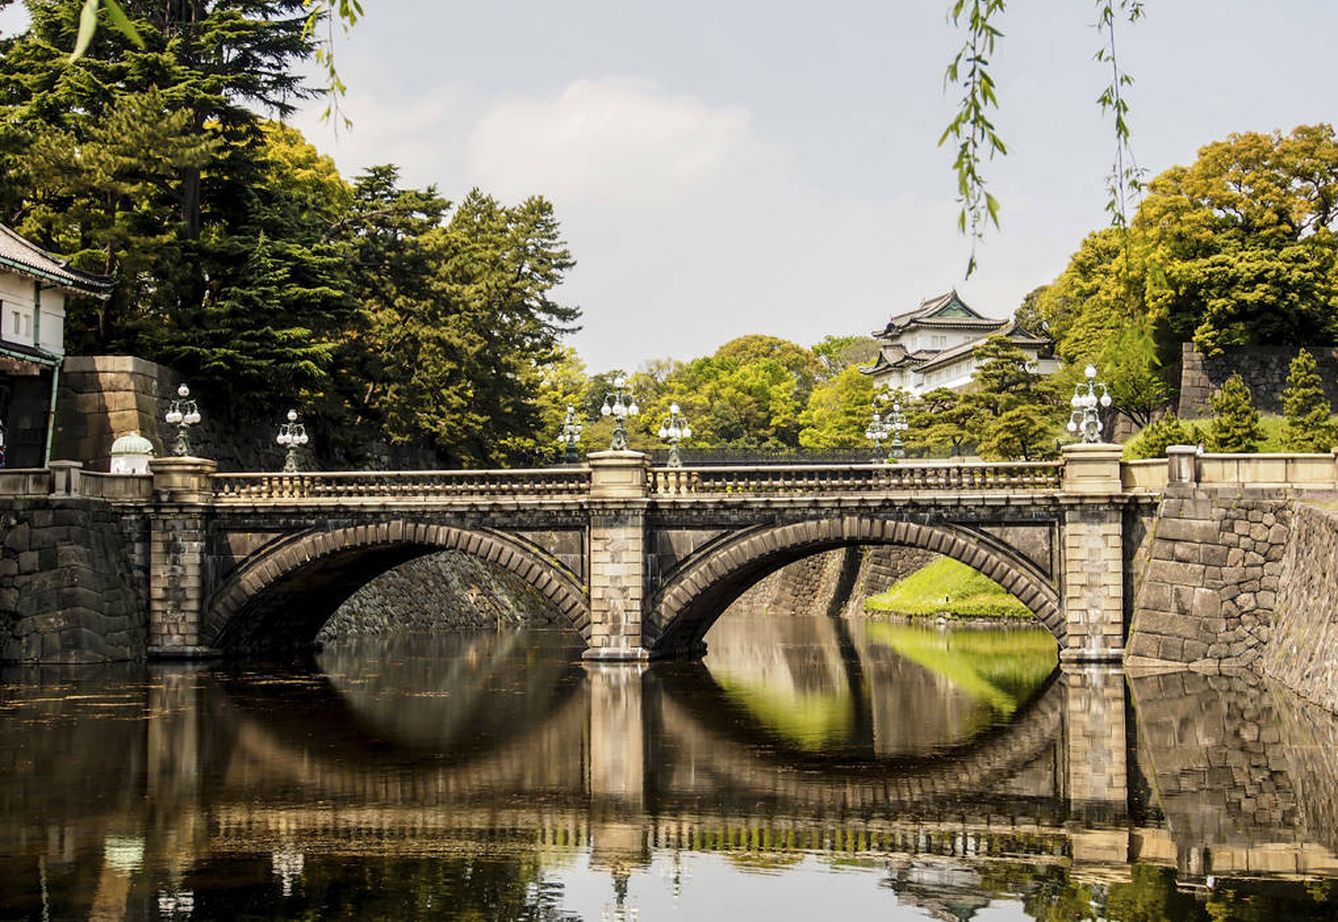 Paisaje en el Palacio Imperial de Tokio (iStock)